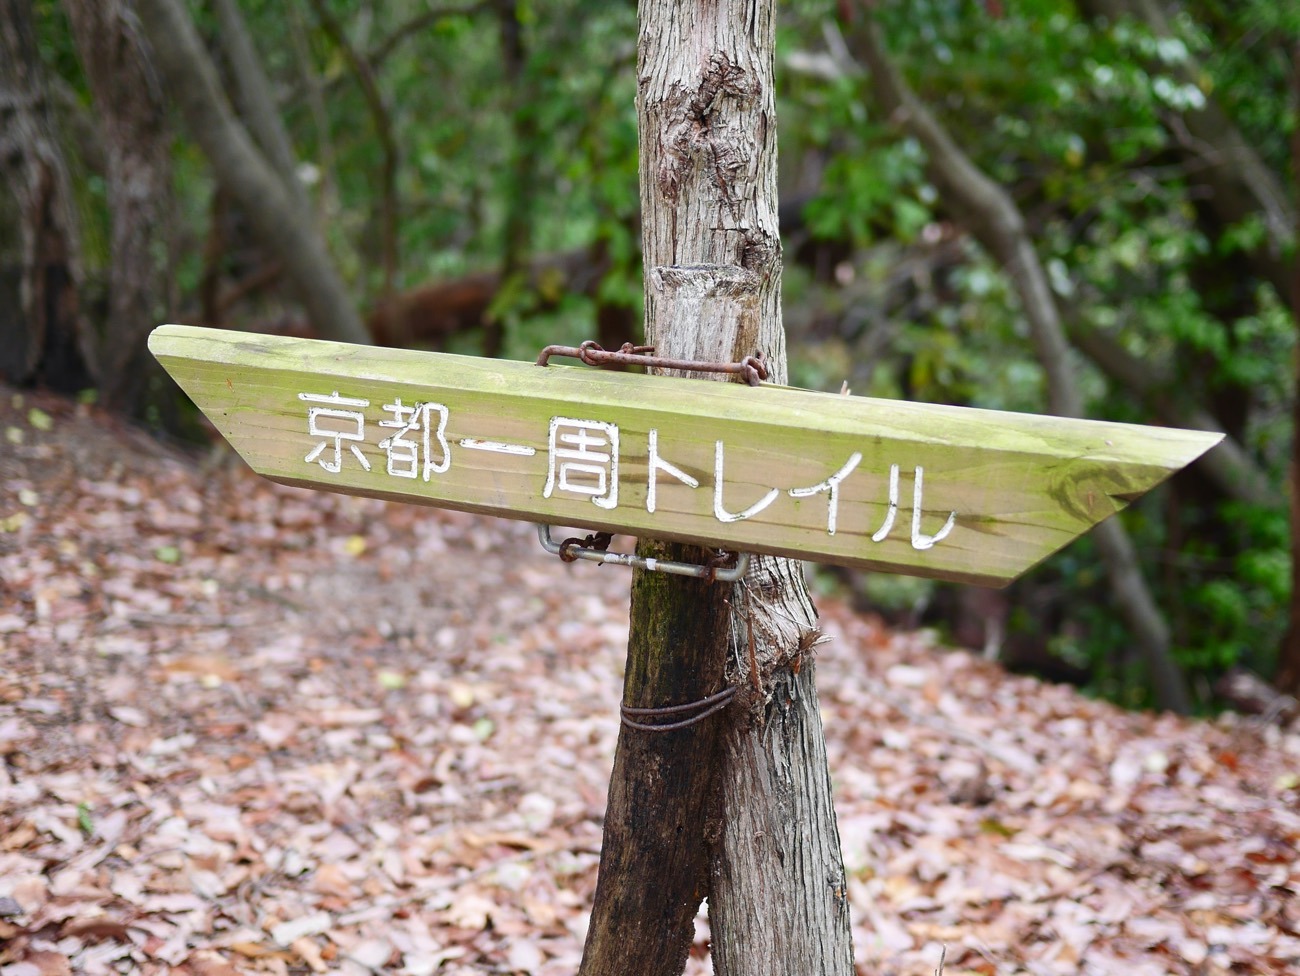 「京都一周トレイル」は全長約83.3kmのトレッキングコース